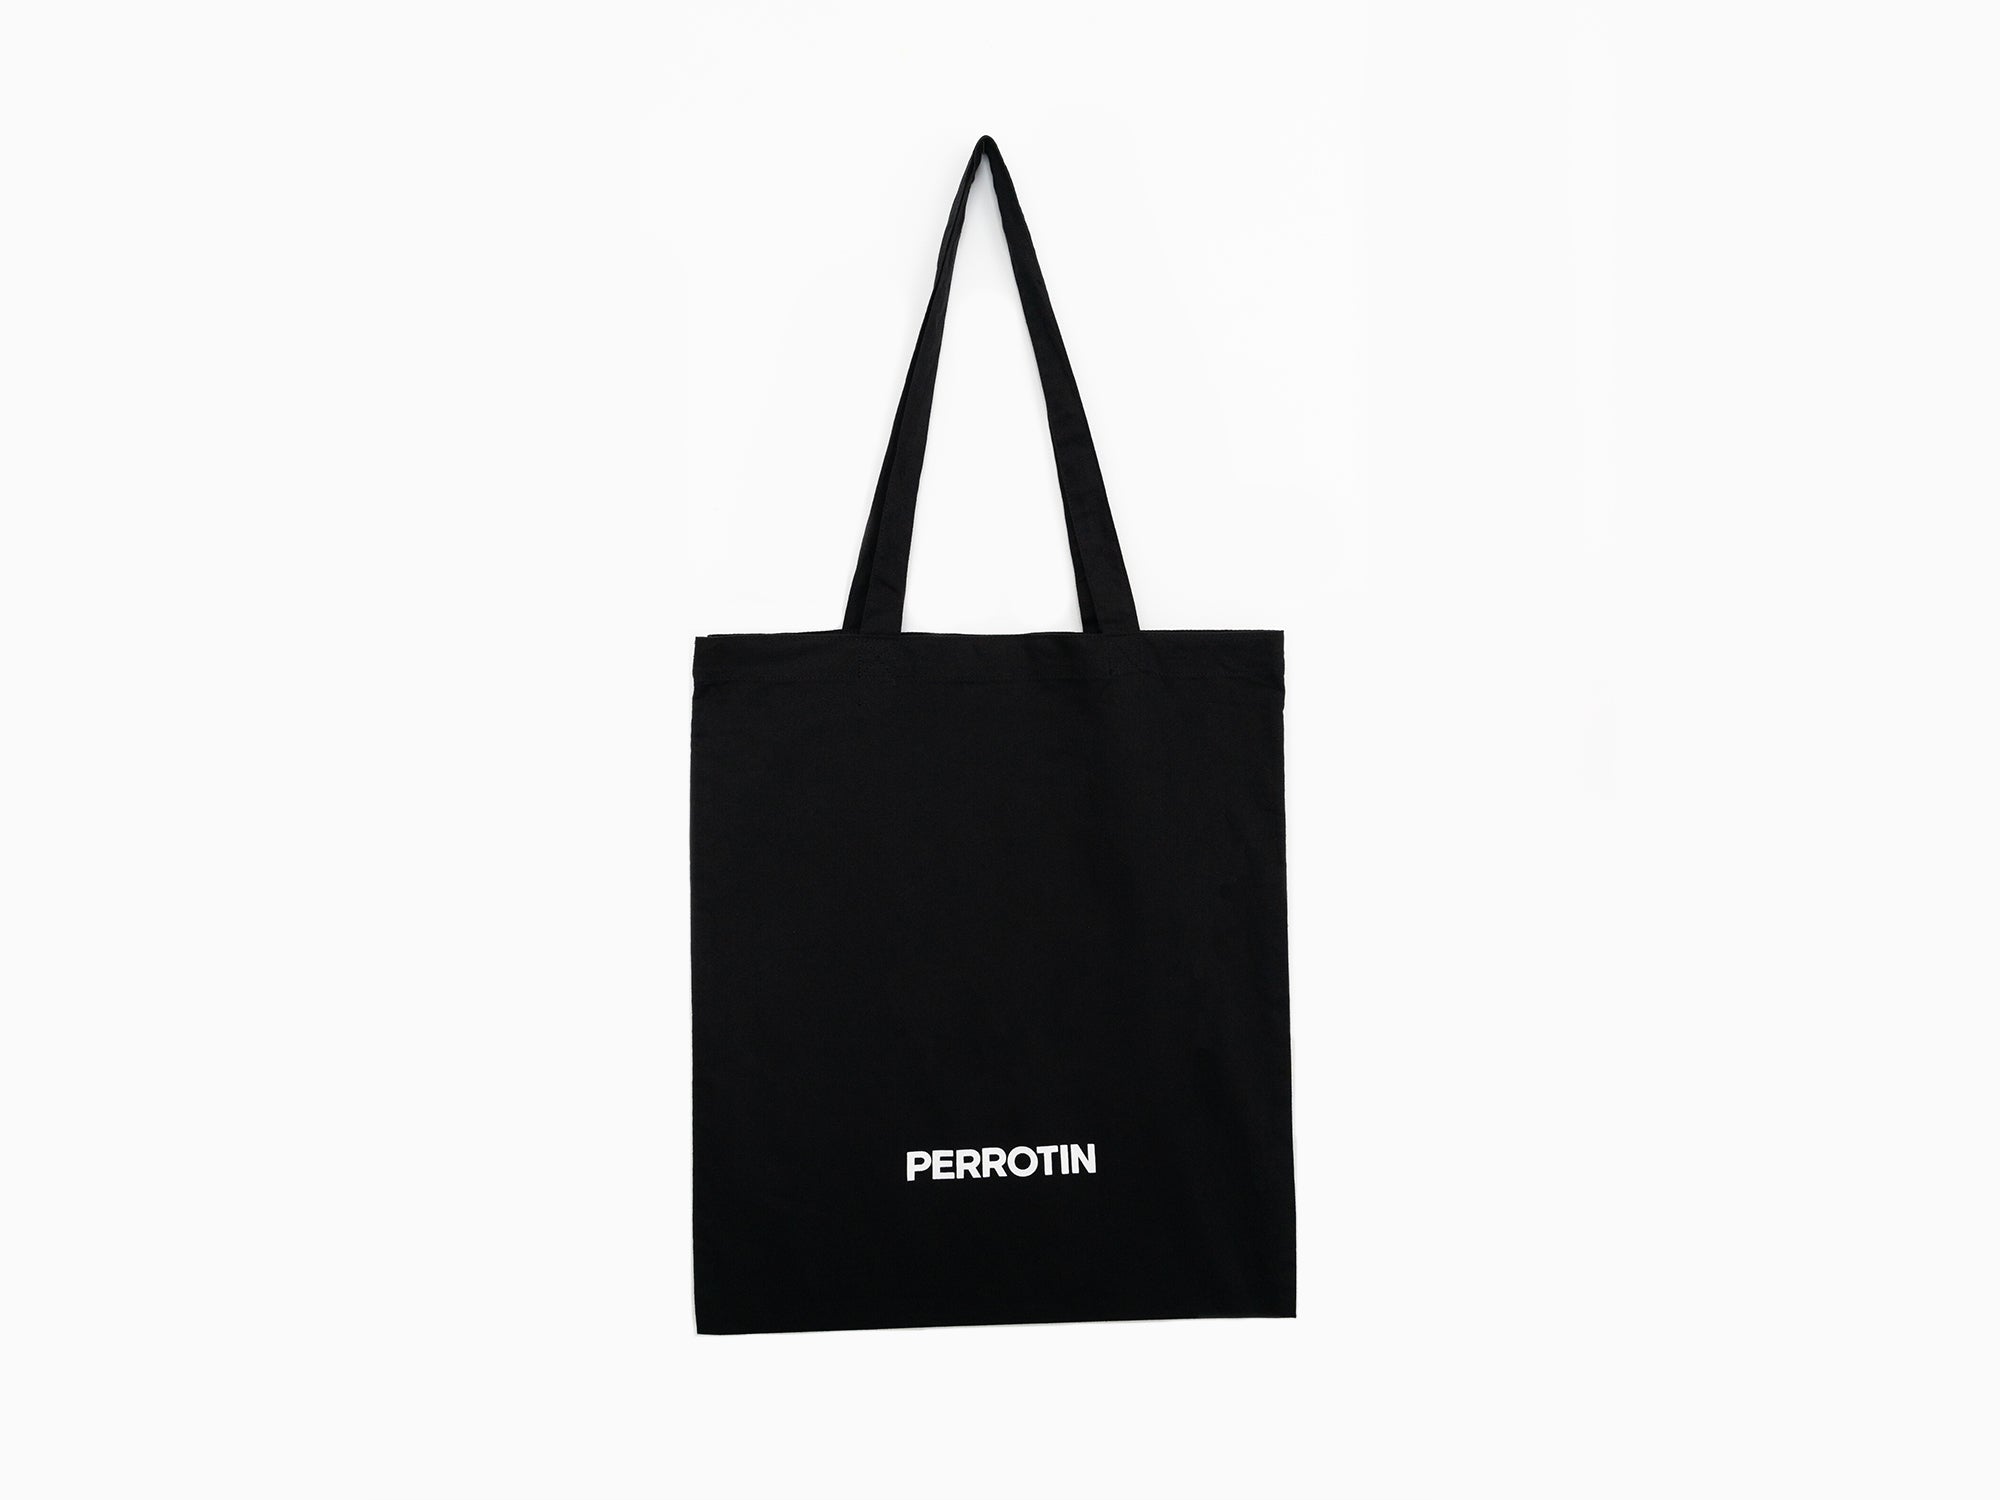 Perrotin - Tote bag